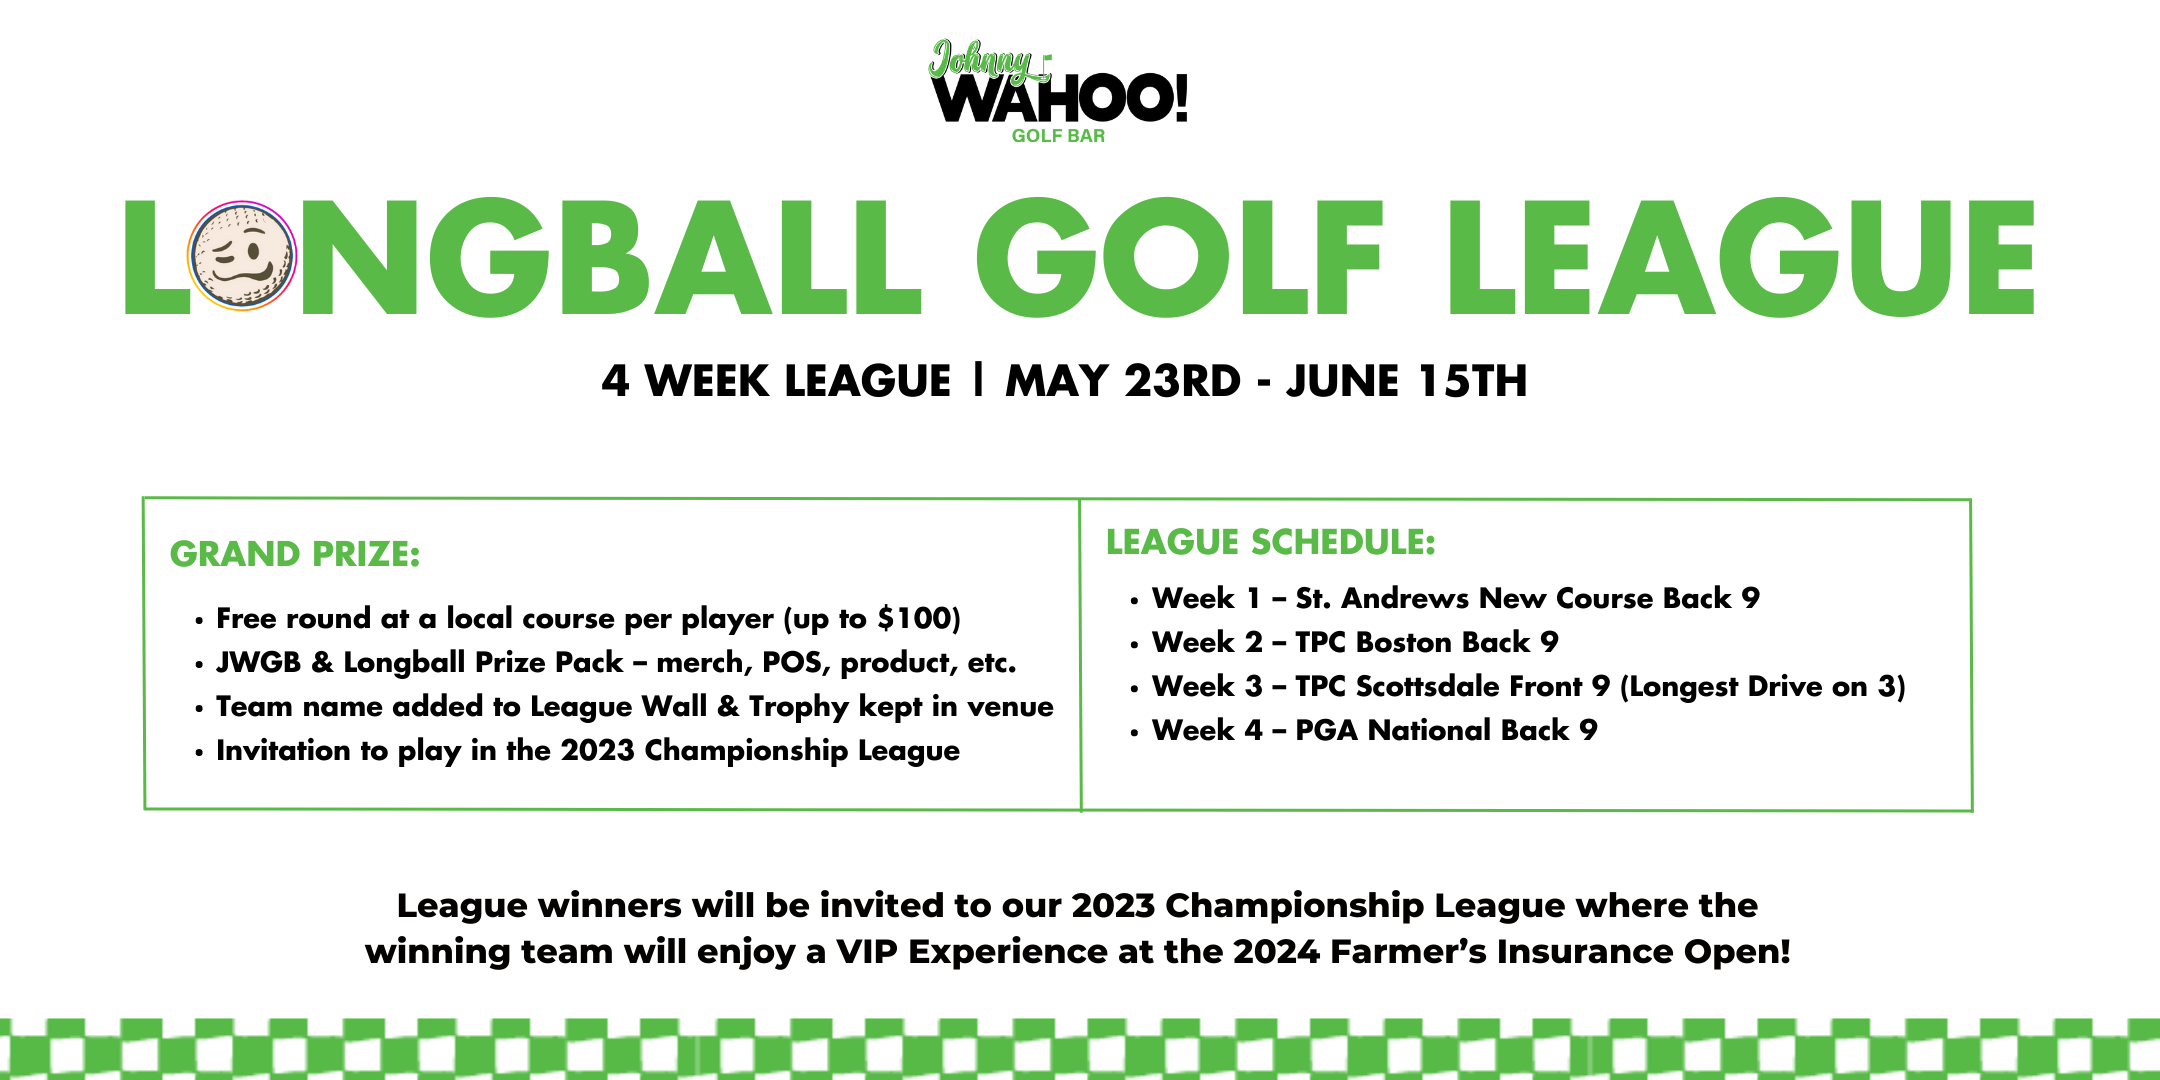 Johnny WAHOO! Golf Bar - Longball Golf League